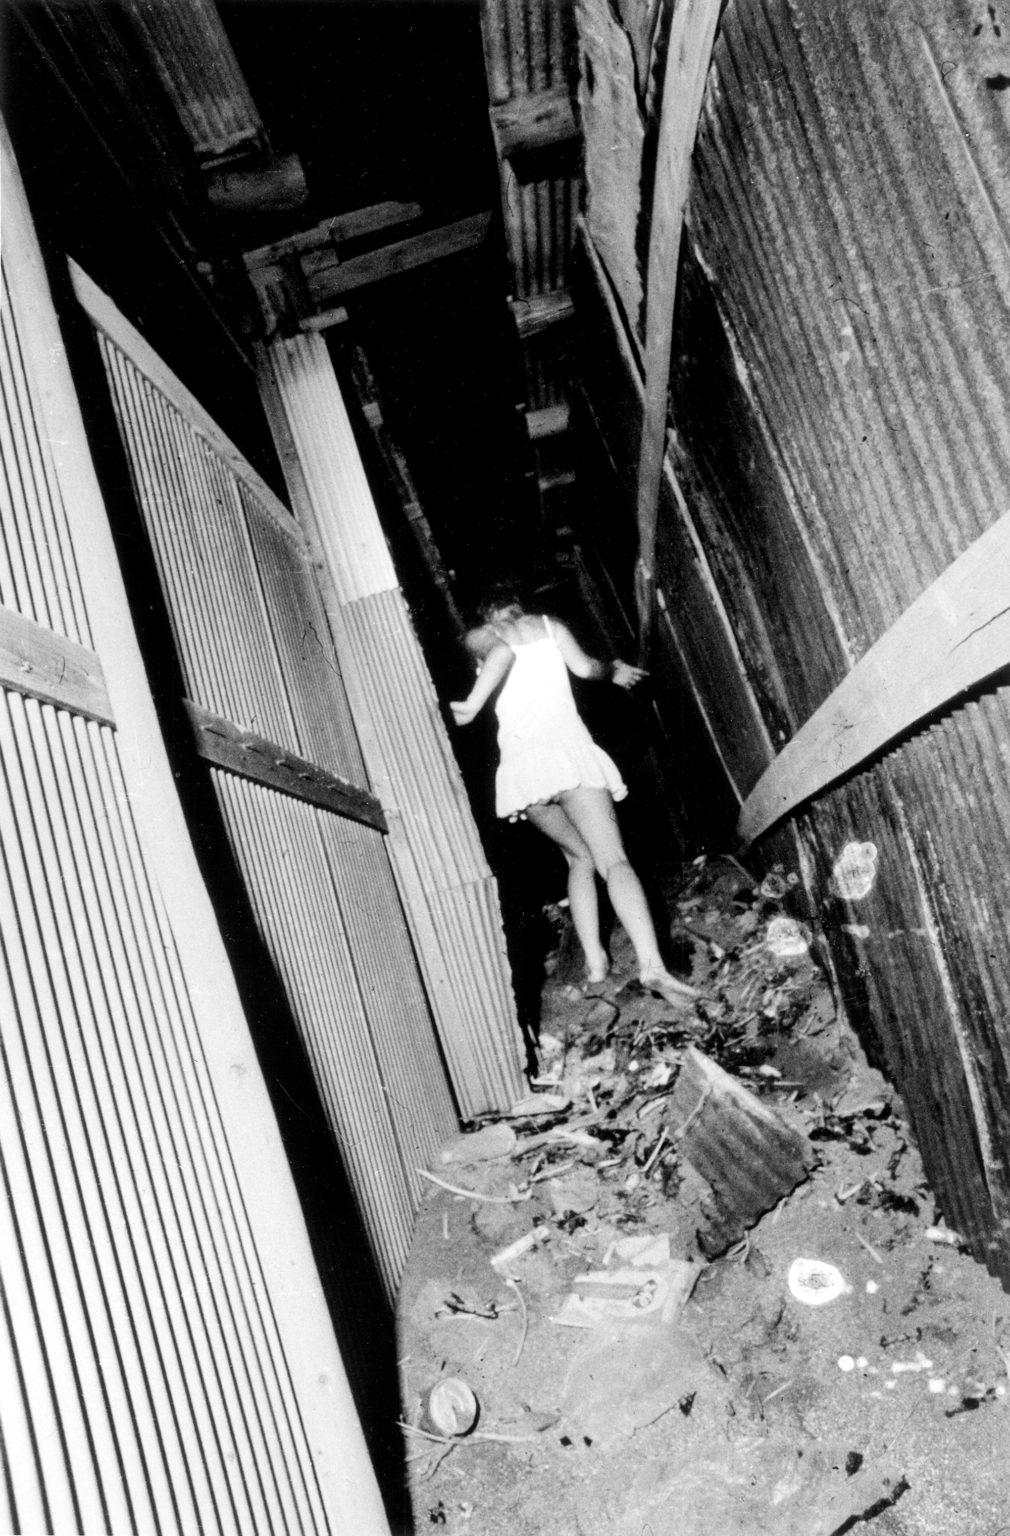 Signierte Fotografie von Daido Moriyama: Yokosuka, Eine japanische Townes 1971/2020:

Eine für Daido Moriyama typische körnige, kontrastreiche Schwarz-Weiß-Darstellung eines anonymen Mädchens in einem weißen Kleid, das eine mit Trümmern übersäte